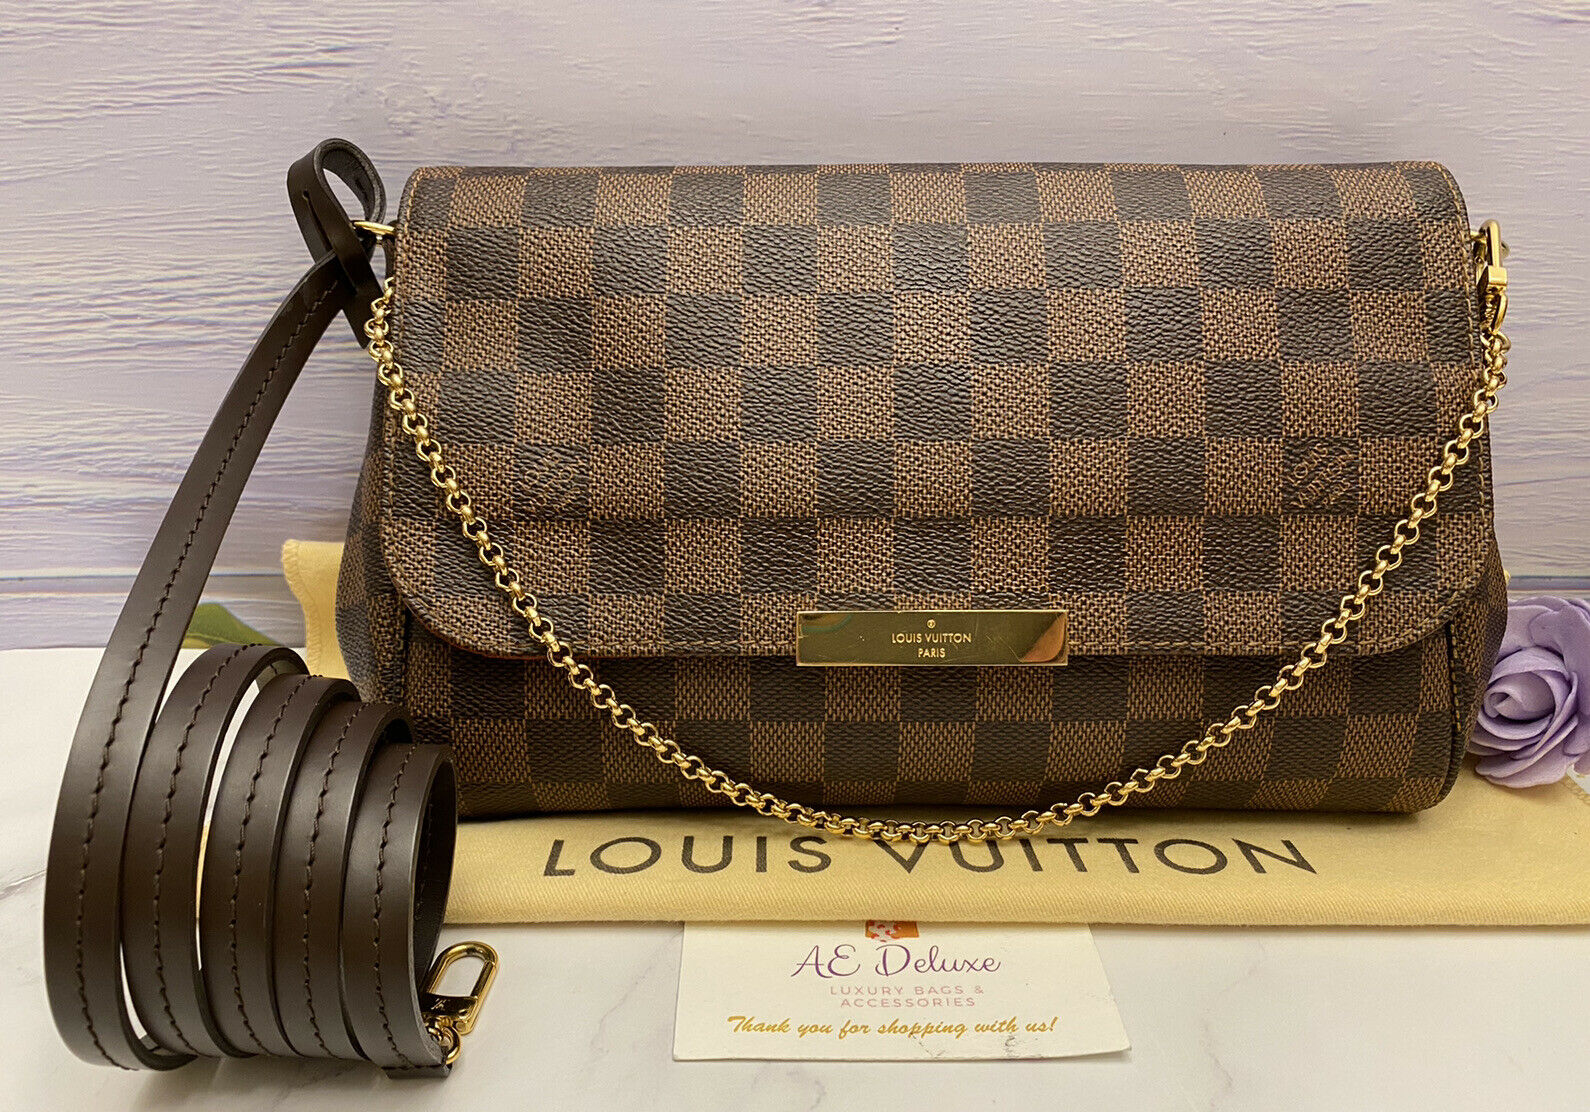 LOUIS VUITTON Louis Vuitton Damier Azur Favorite MM Clutch Bag